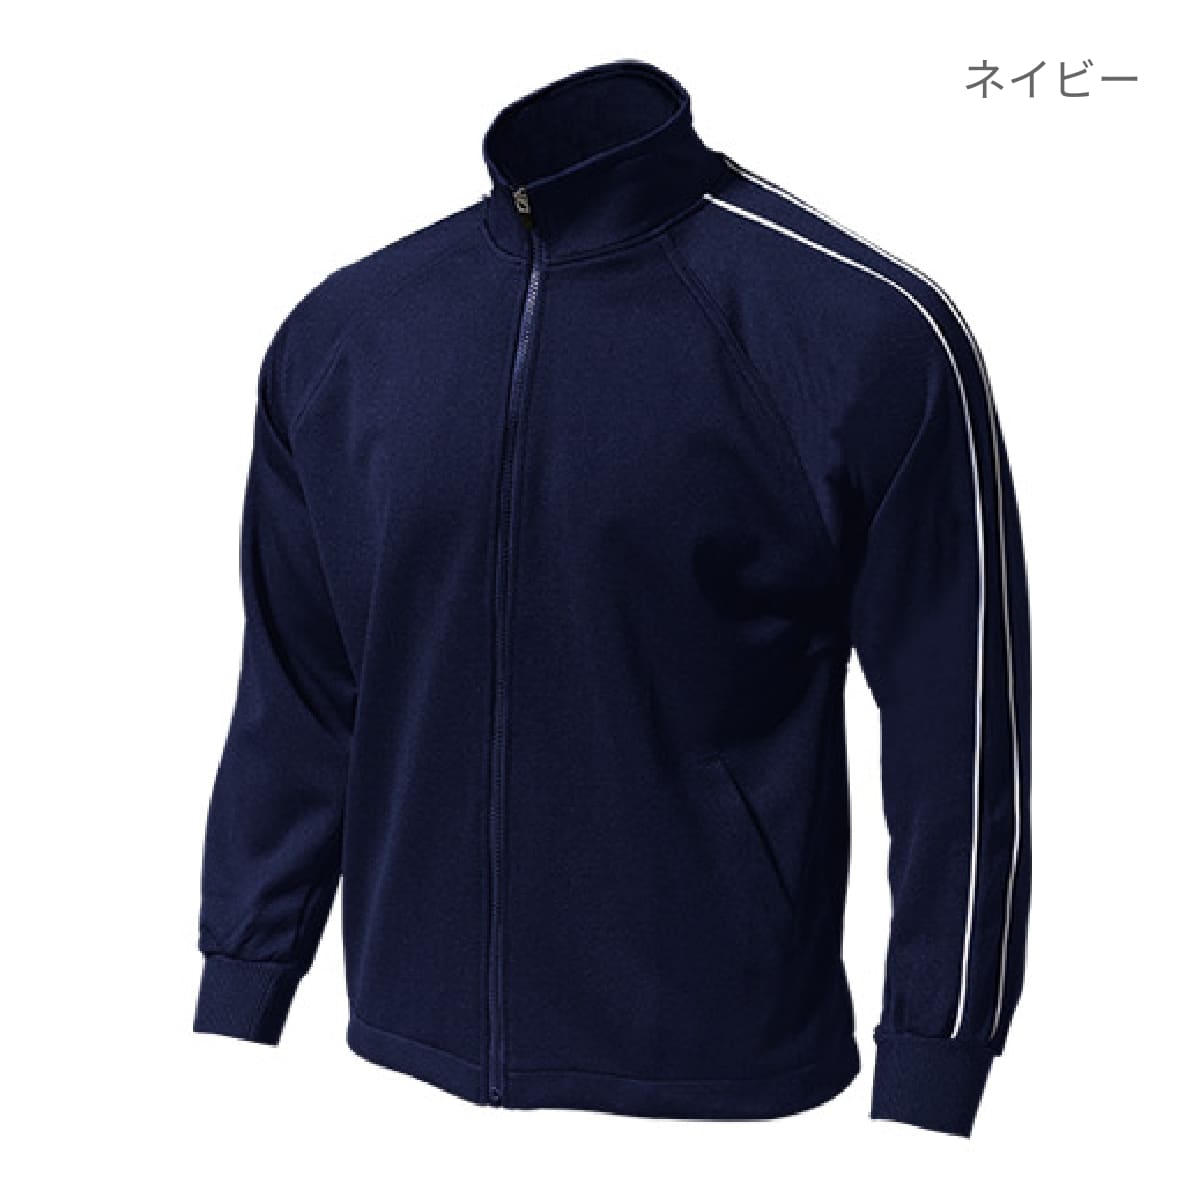 【送料無料】パイピングトレーニングシャツ | ユニフォーム | 1枚 | P2000 | ブルー